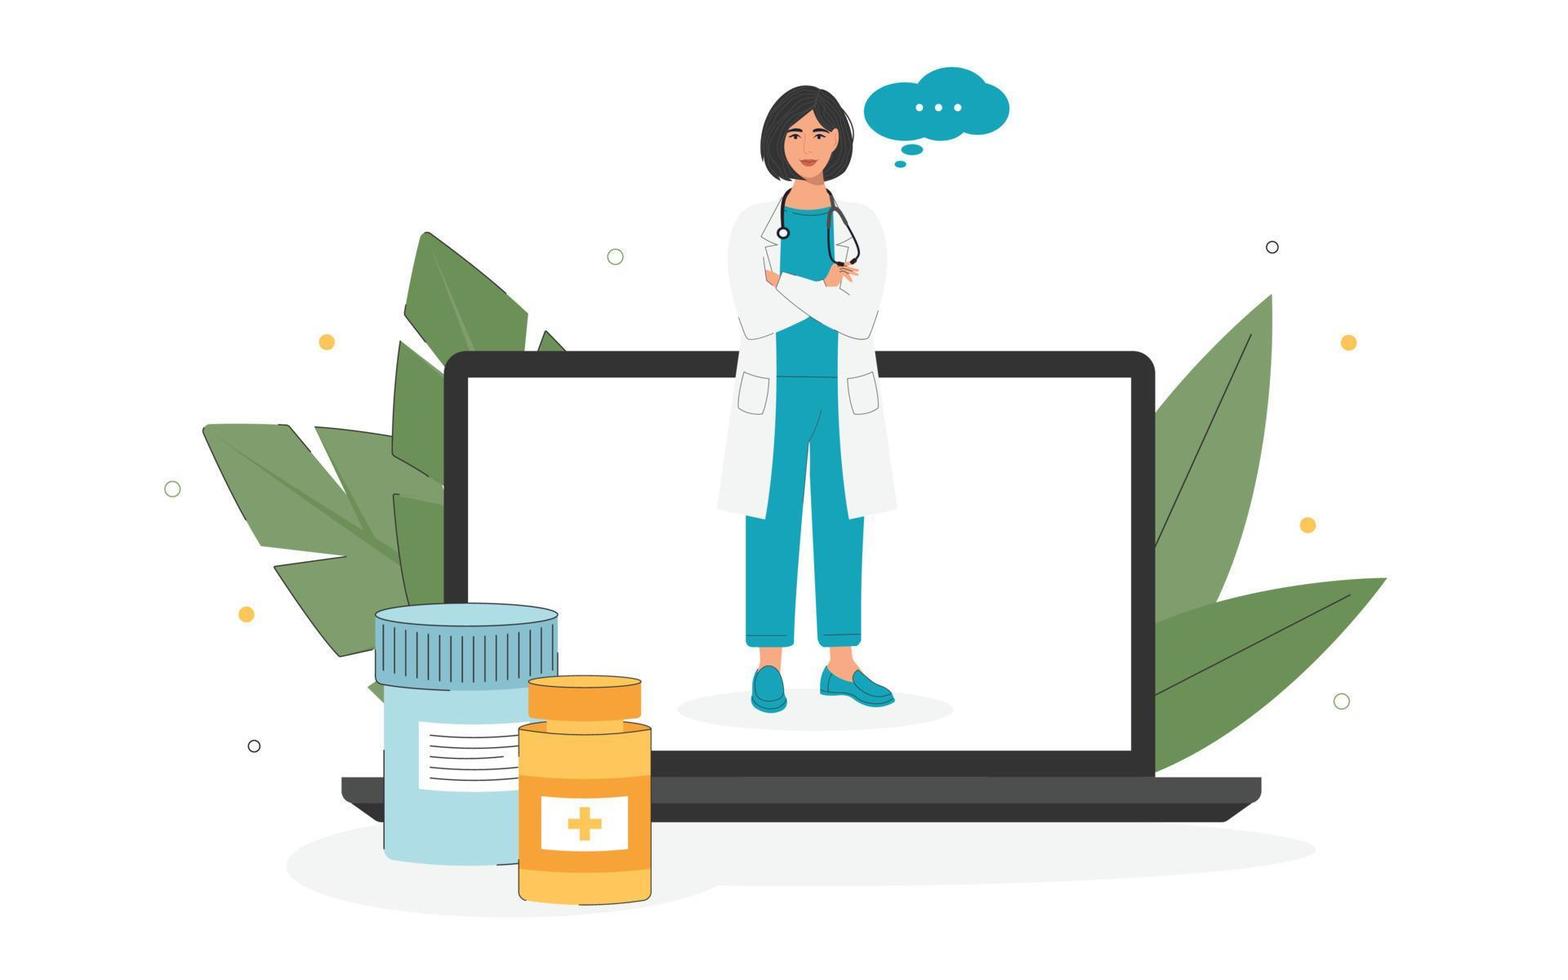 il concetto di consulenza medica online sui farmaci. medicina online, assistenza sanitaria, diagnostica medica. illustrazione di una donna medico da un laptop in uno stile piatto. vettore